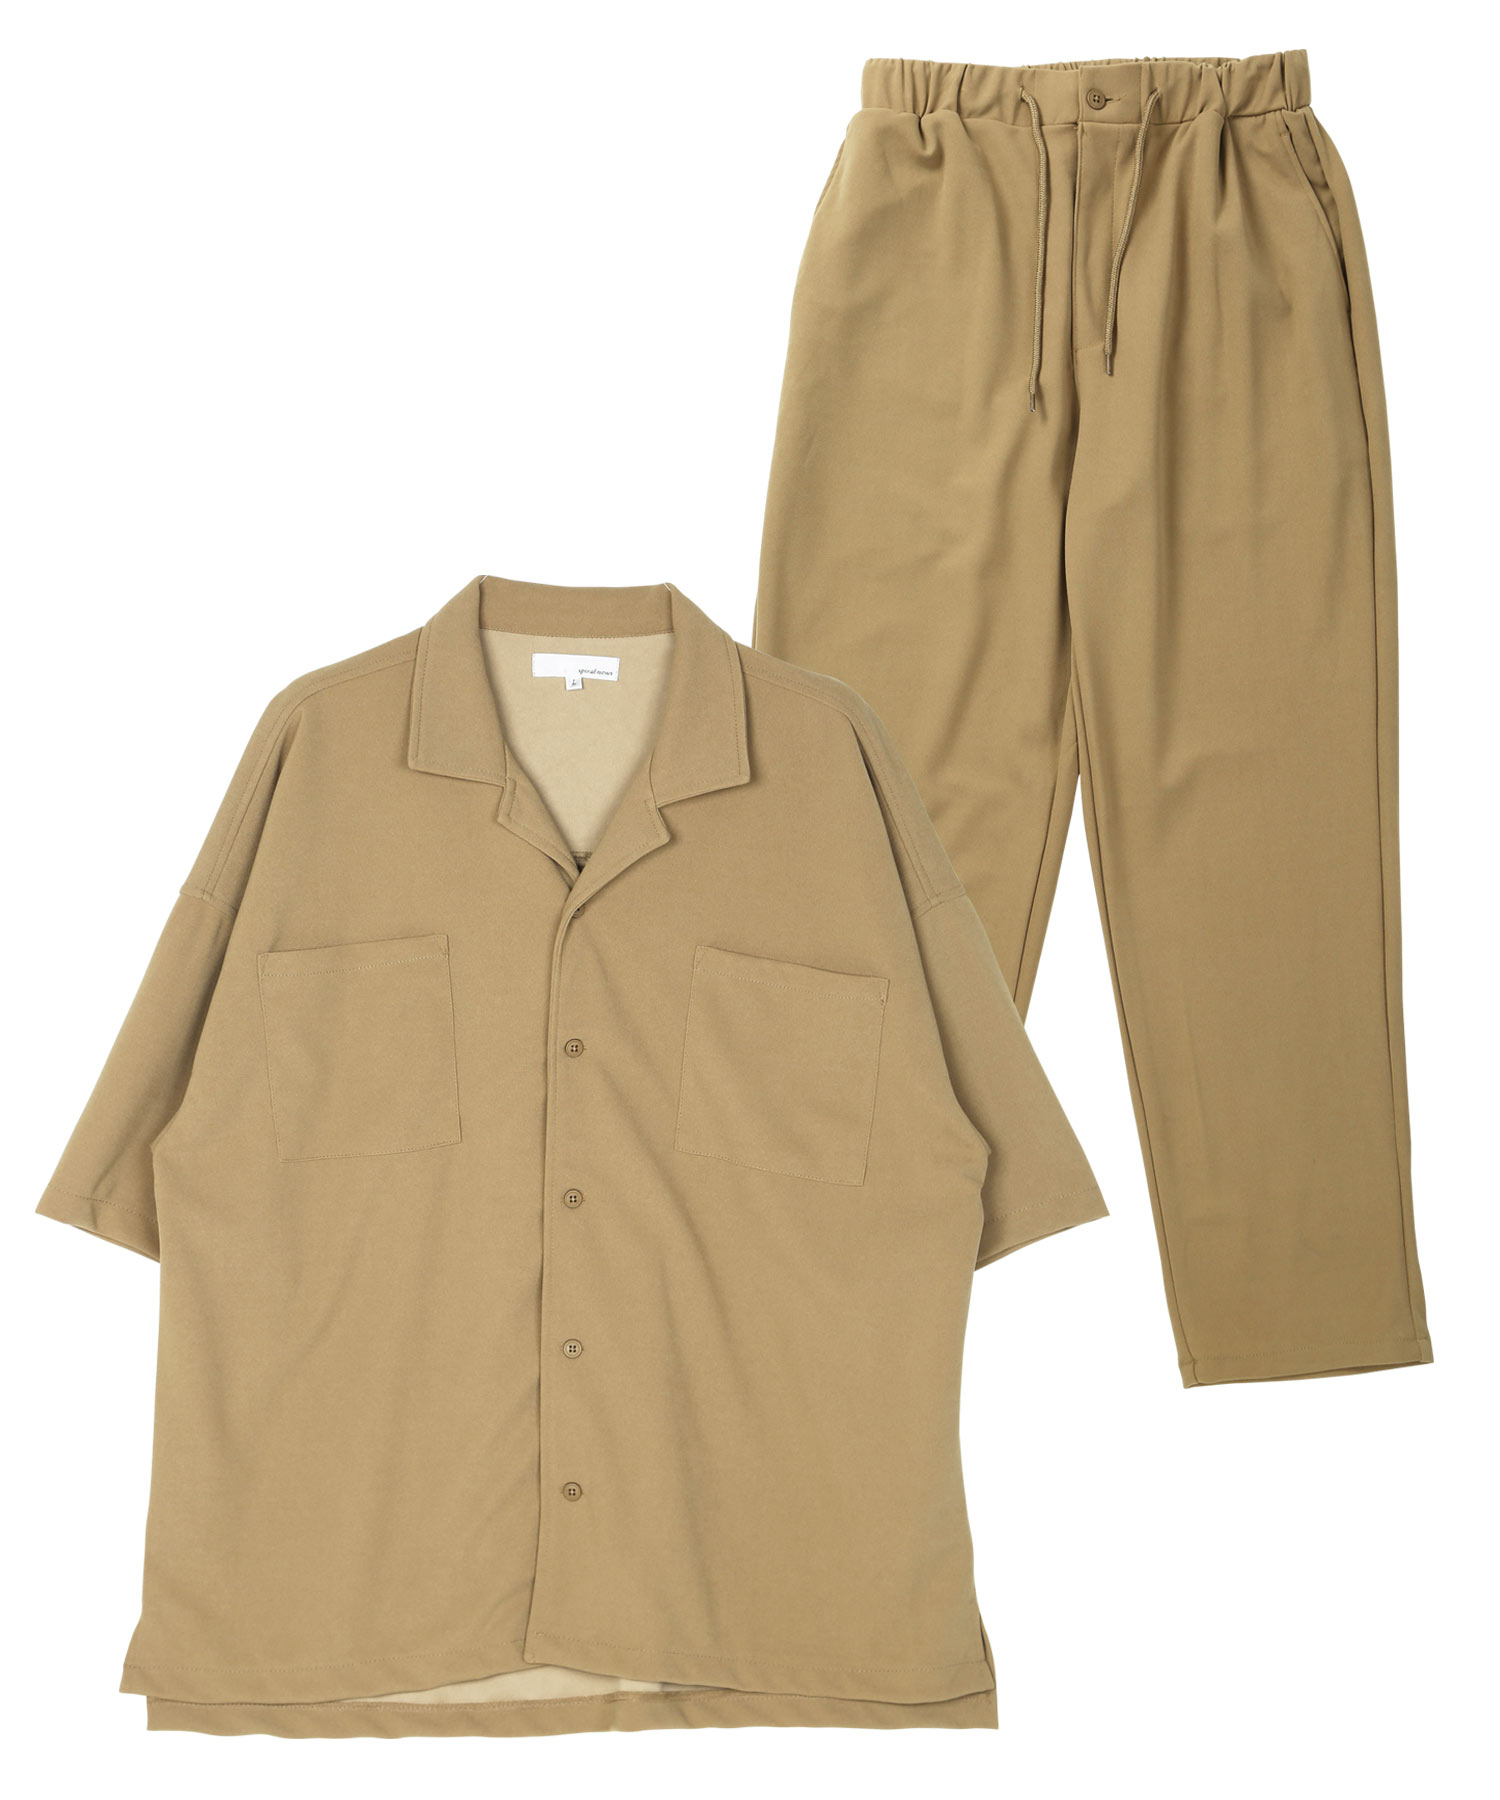 梨地オープンカラーシャツセットアップ / セットアップ 7分袖シャツ 